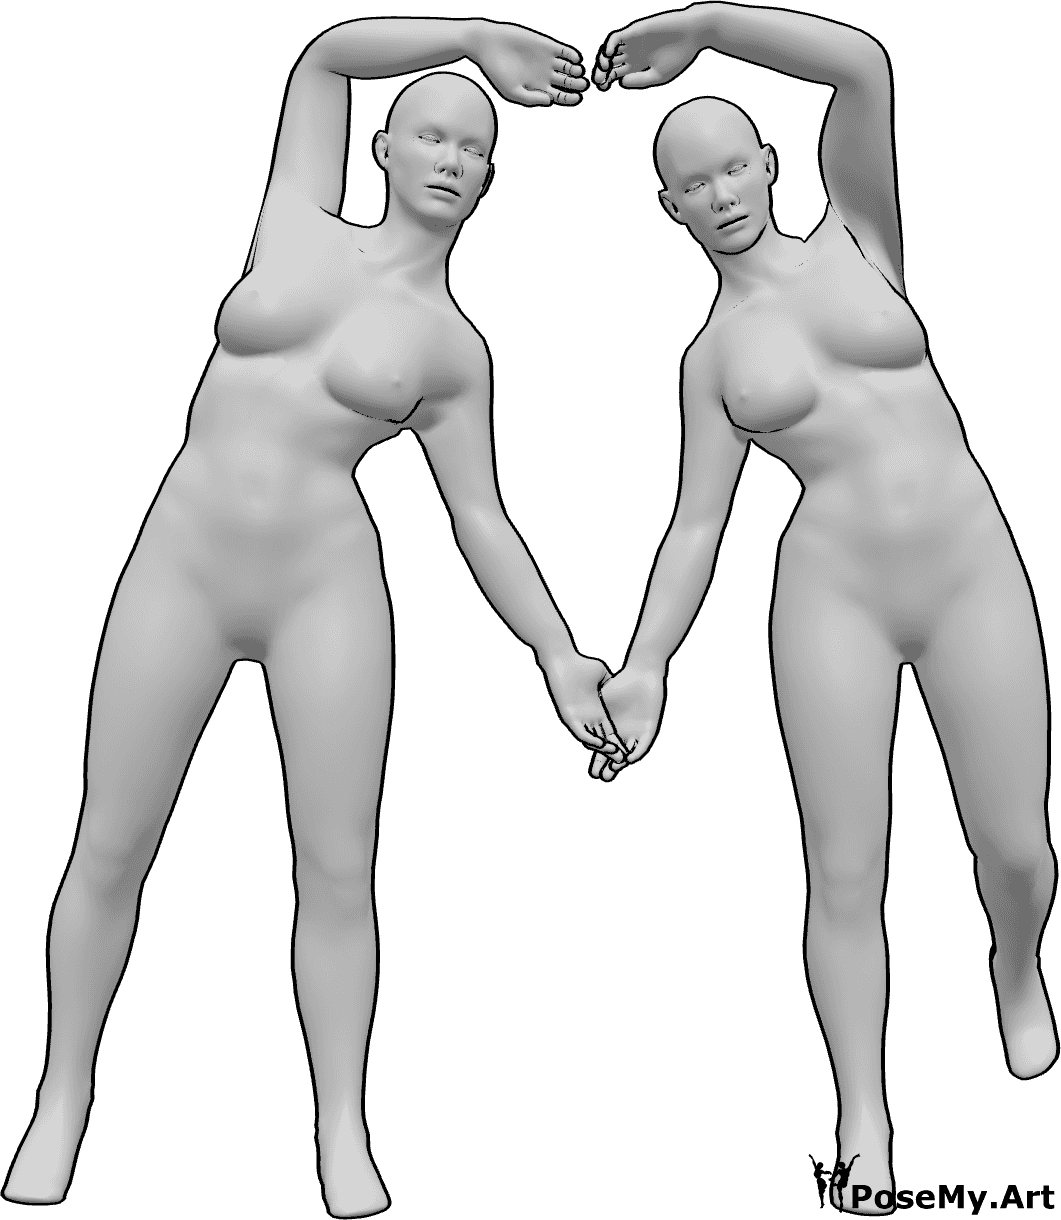 Posen-Referenz- Weibliche Herz-Pose - Zwei Frauen stehen und bilden ein Herz mit ihren Armen